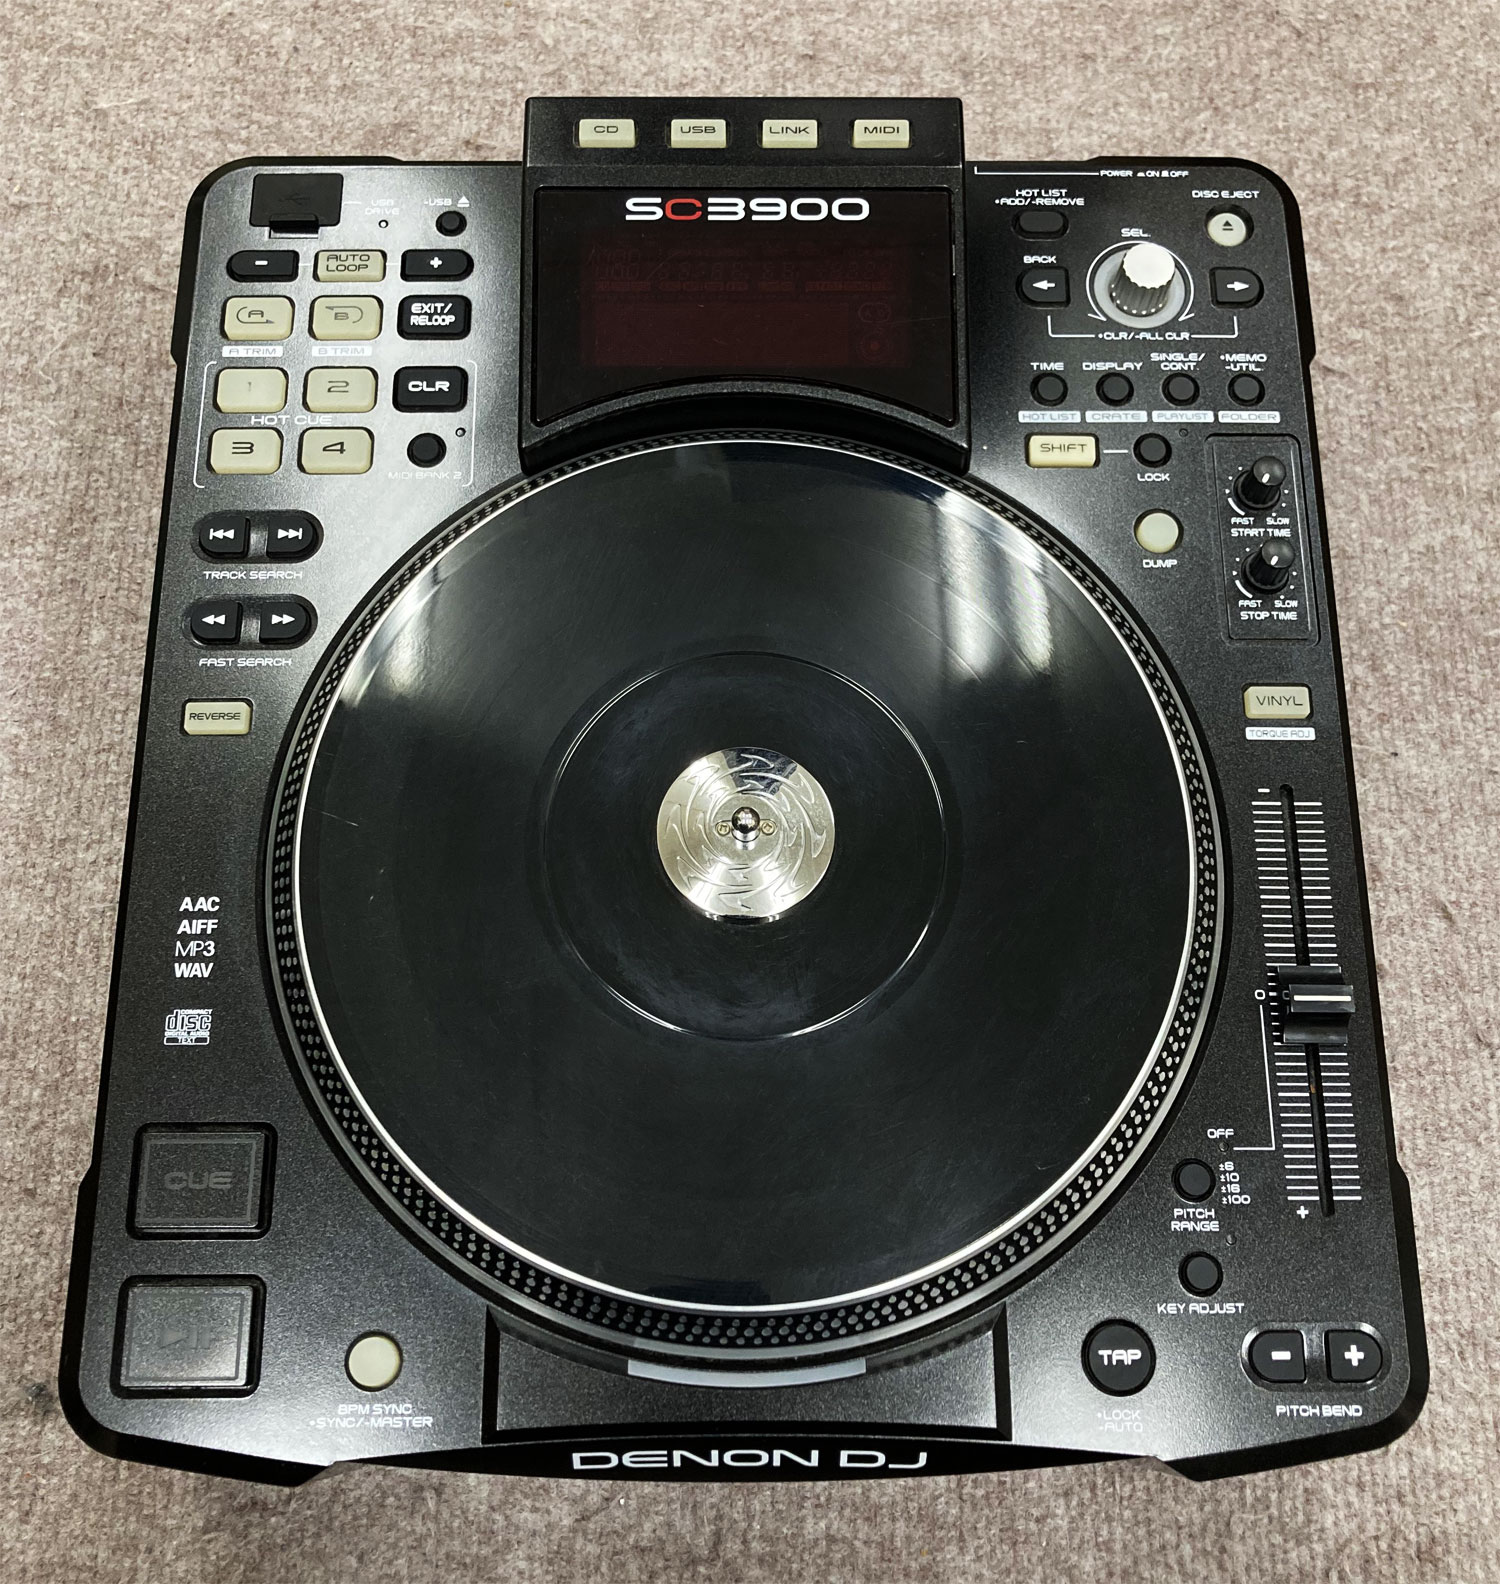 中古品】DENON DJ/CDJ/SC3900 -DJ機材アナログレコード専門店OTAIRECORD